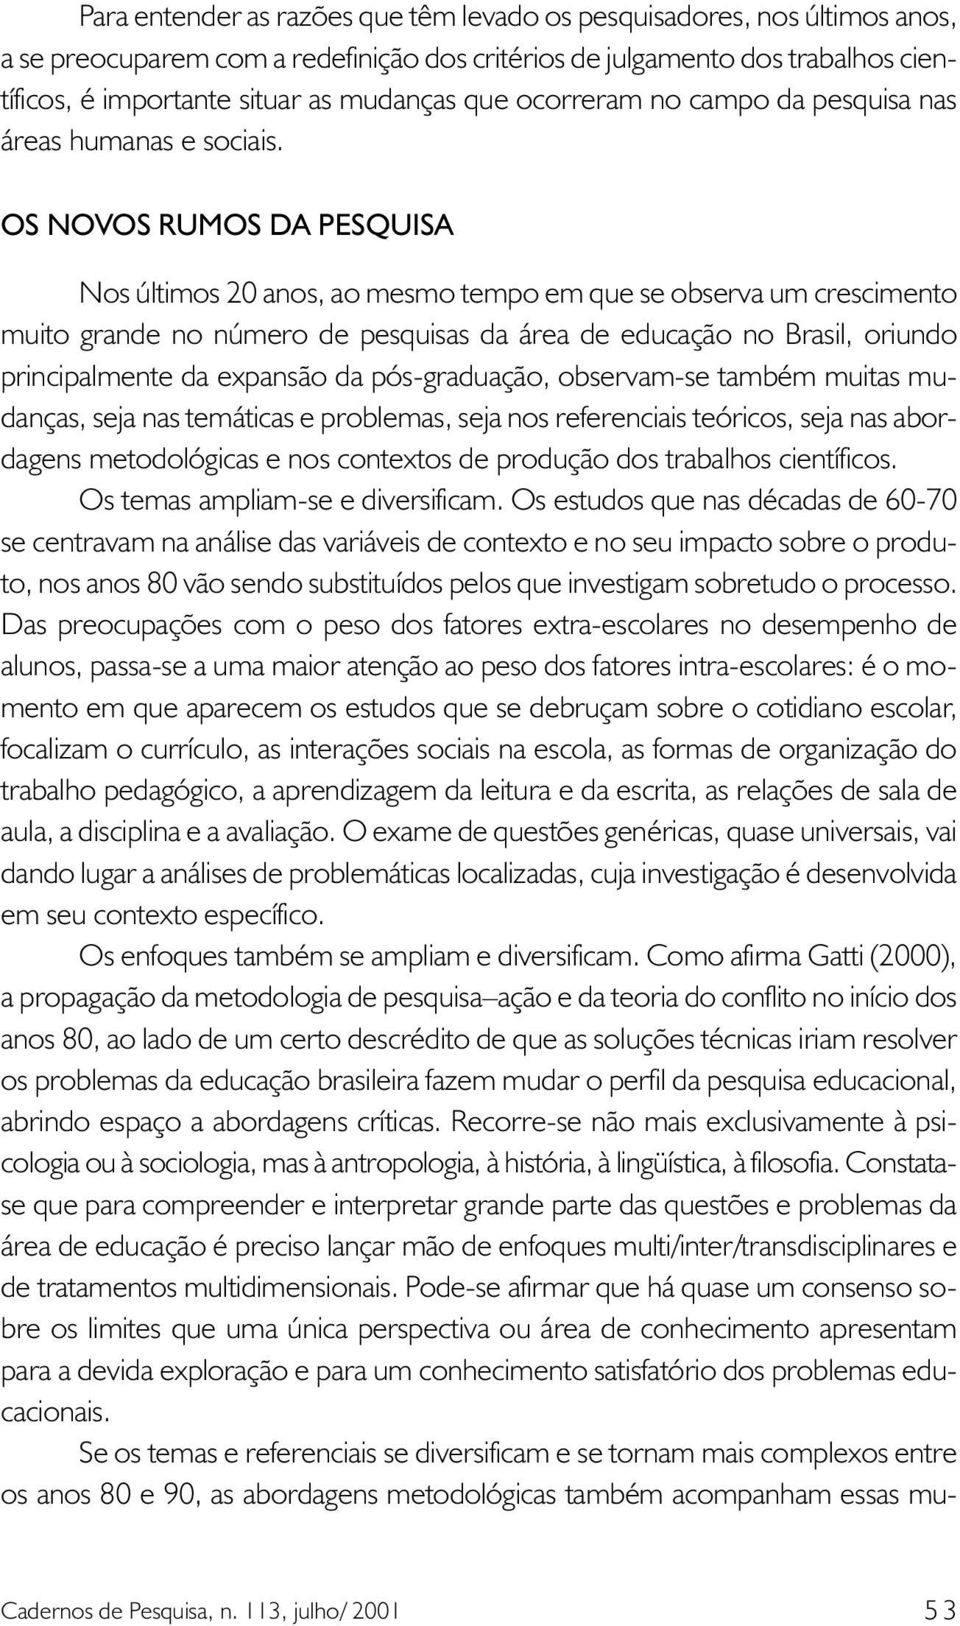 OS NOVOS RUMOS DA PESQUISA Nos últimos 20 anos, ao mesmo tempo em que se observa um crescimento muito grande no número de pesquisas da área de educação no Brasil, oriundo principalmente da expansão